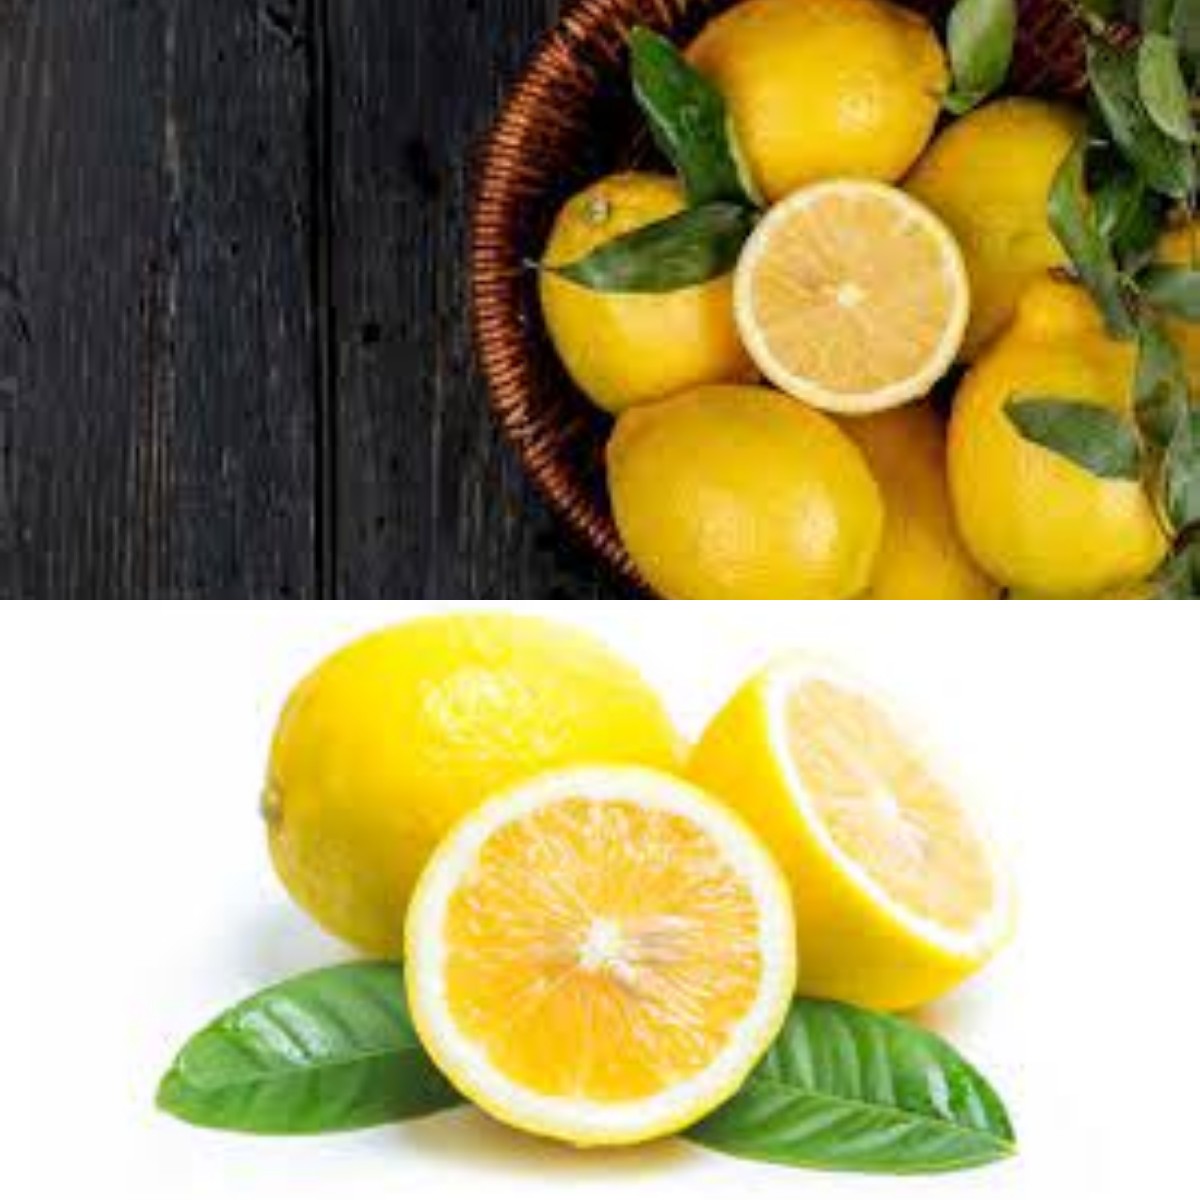 Rasakan Khasiatnya! Inilah Manfaat Baik Buah Lemon yang Bagus untuk Jaga Stamina Tubuh! 